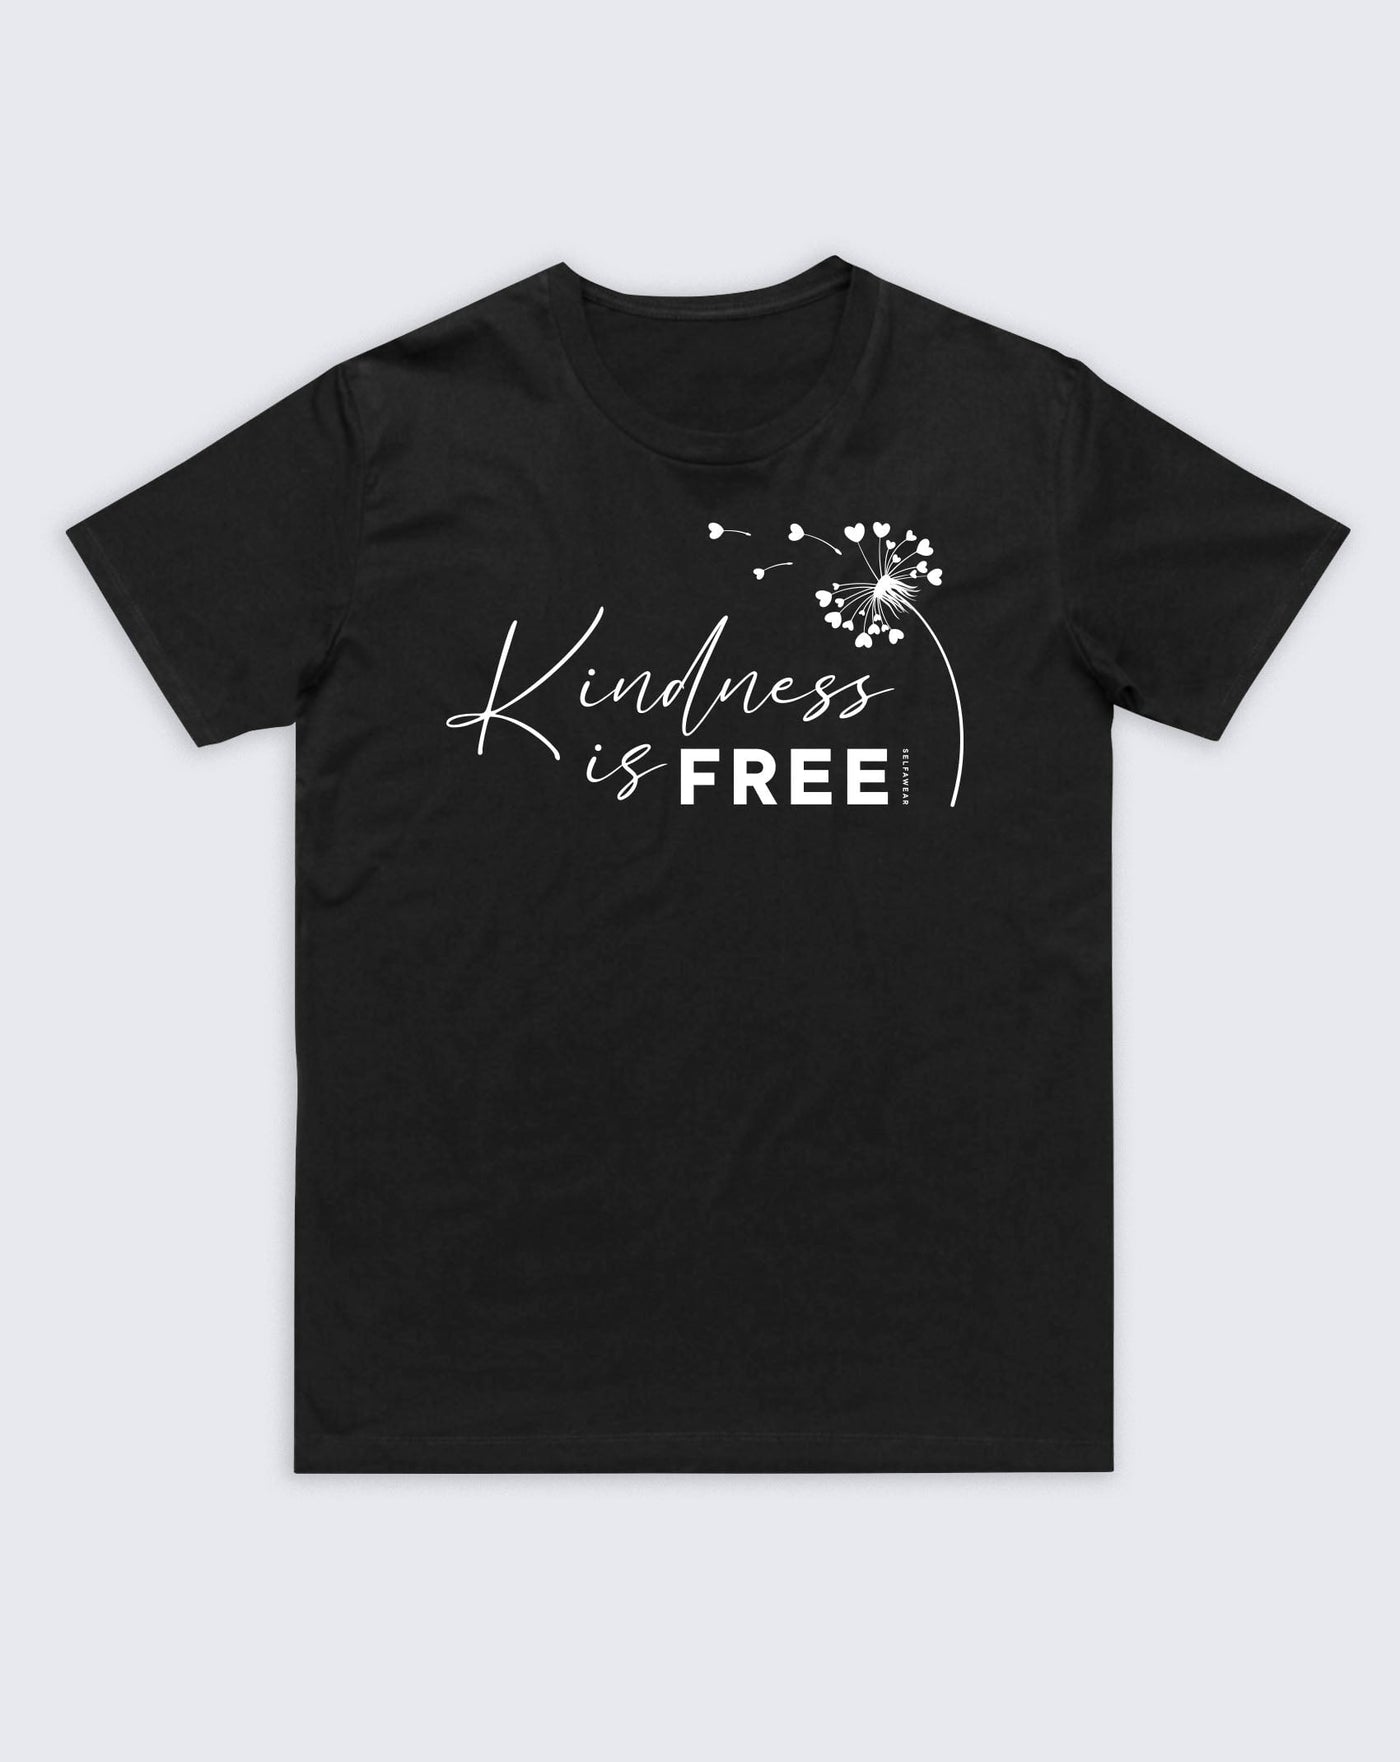 Kindness Is FREE T-Shirt Black Shirts Selfawear 